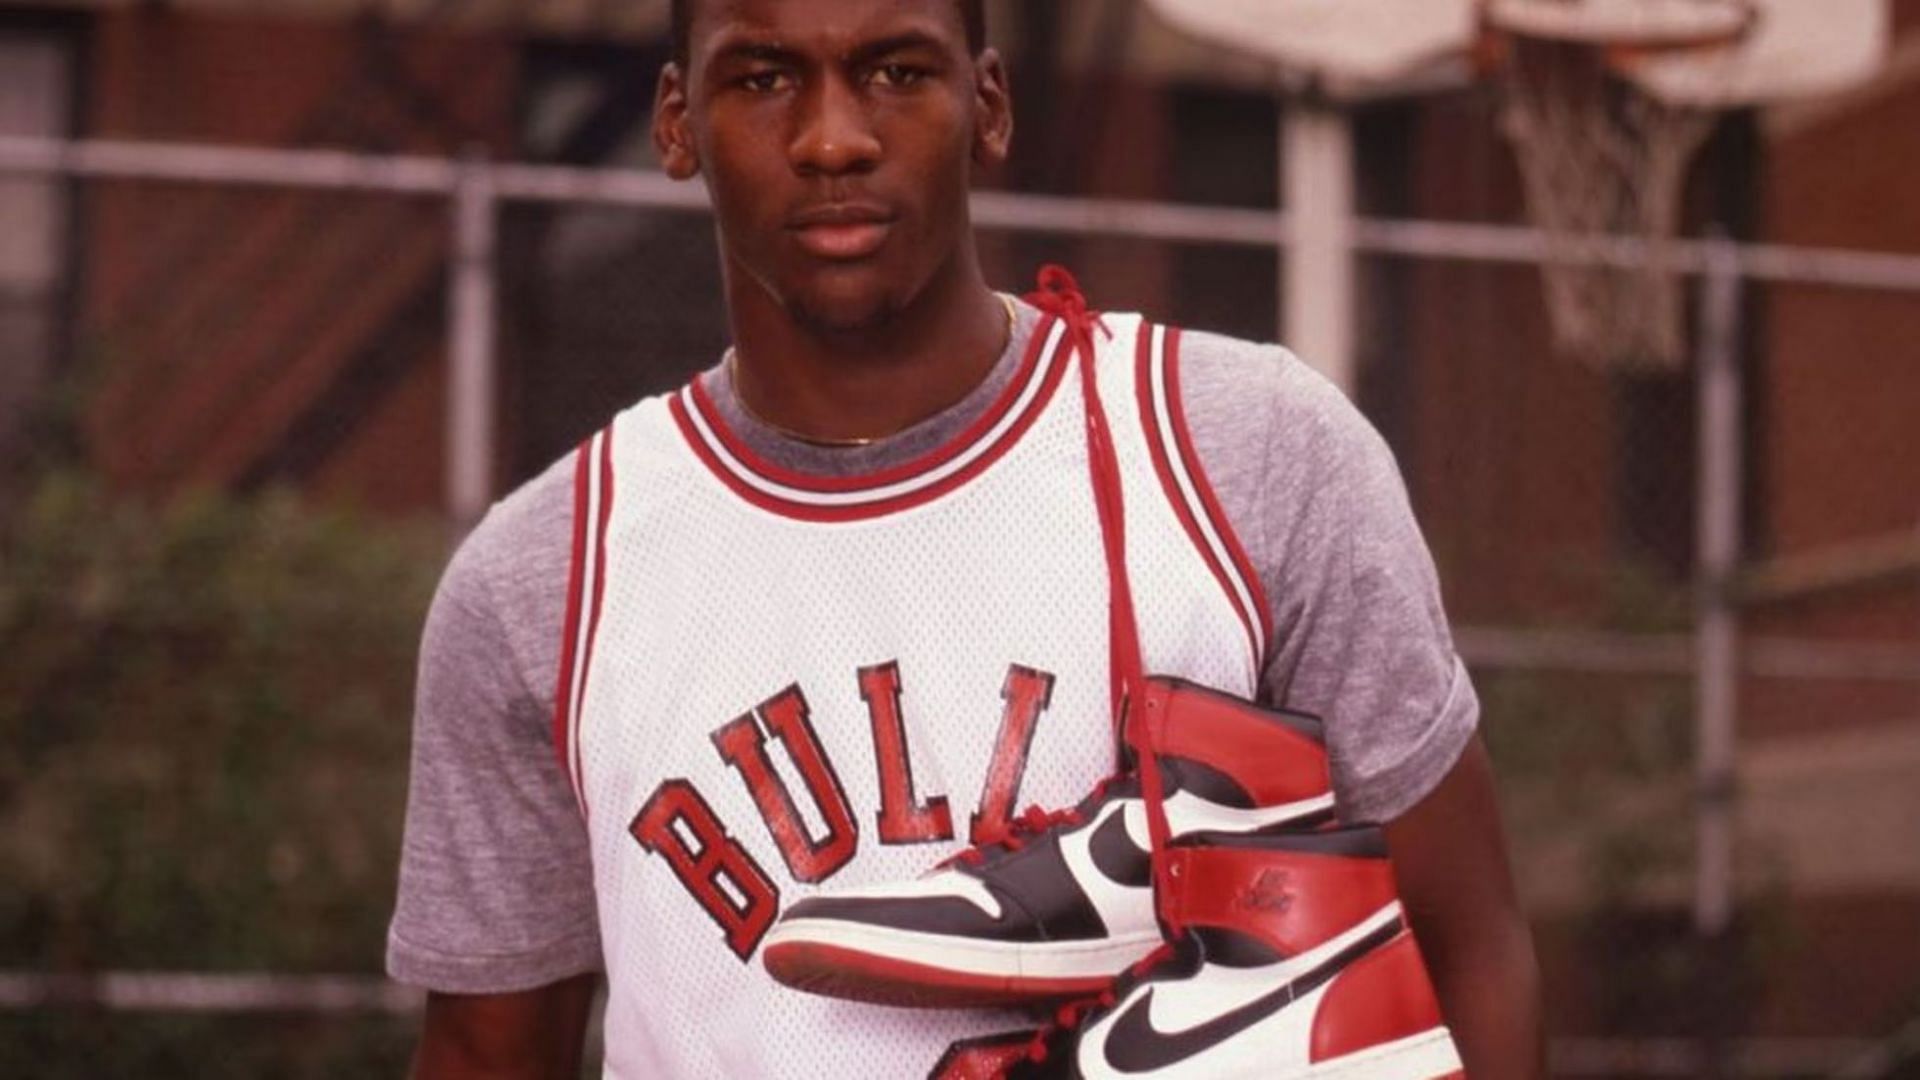 Michael Jordan posing with his shoes